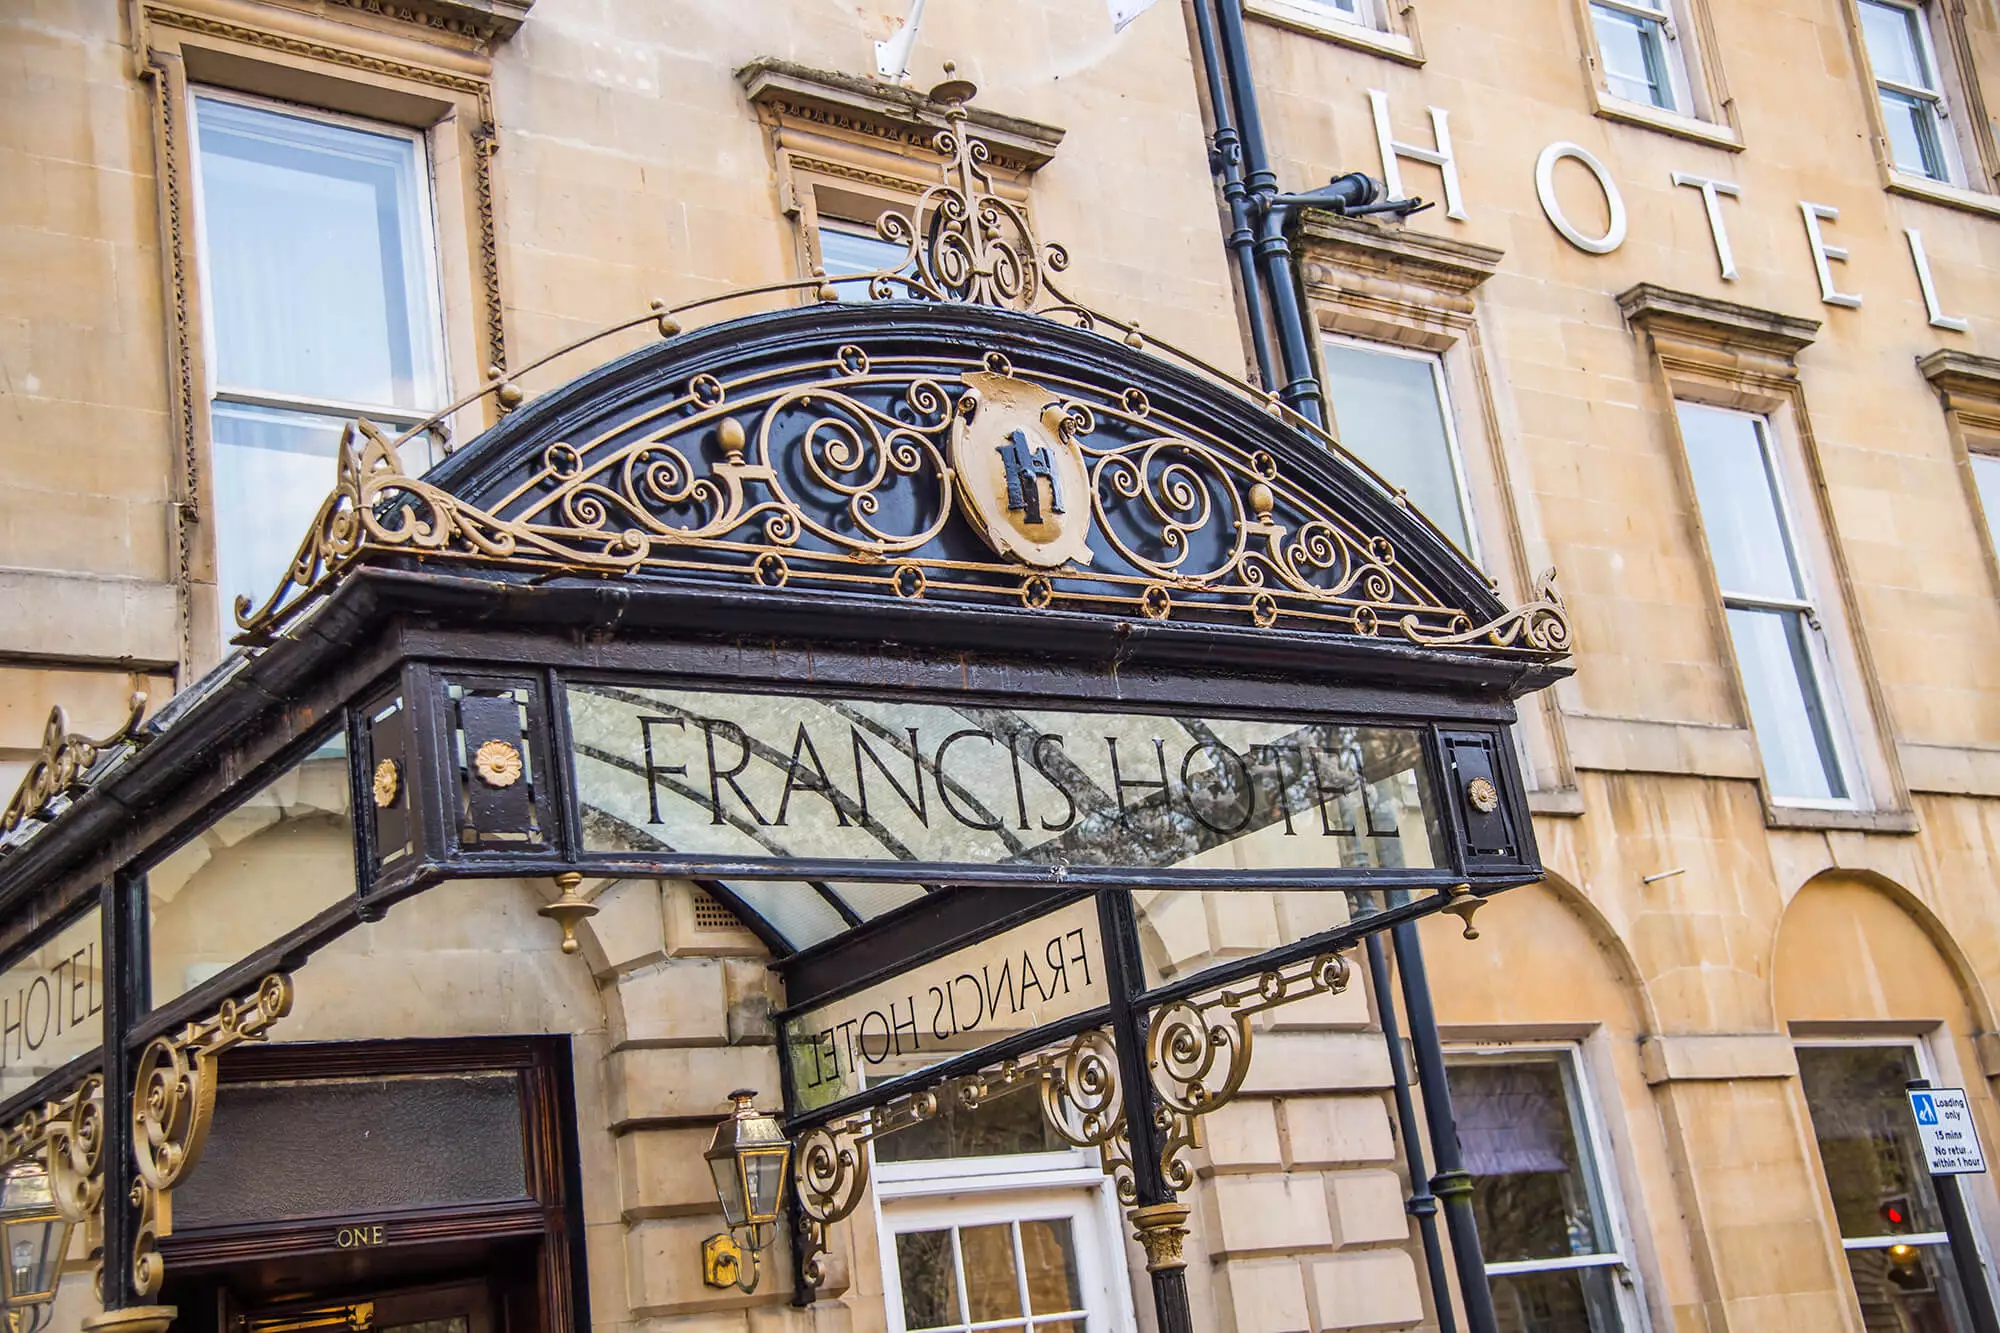 The Francis Hotel Bath